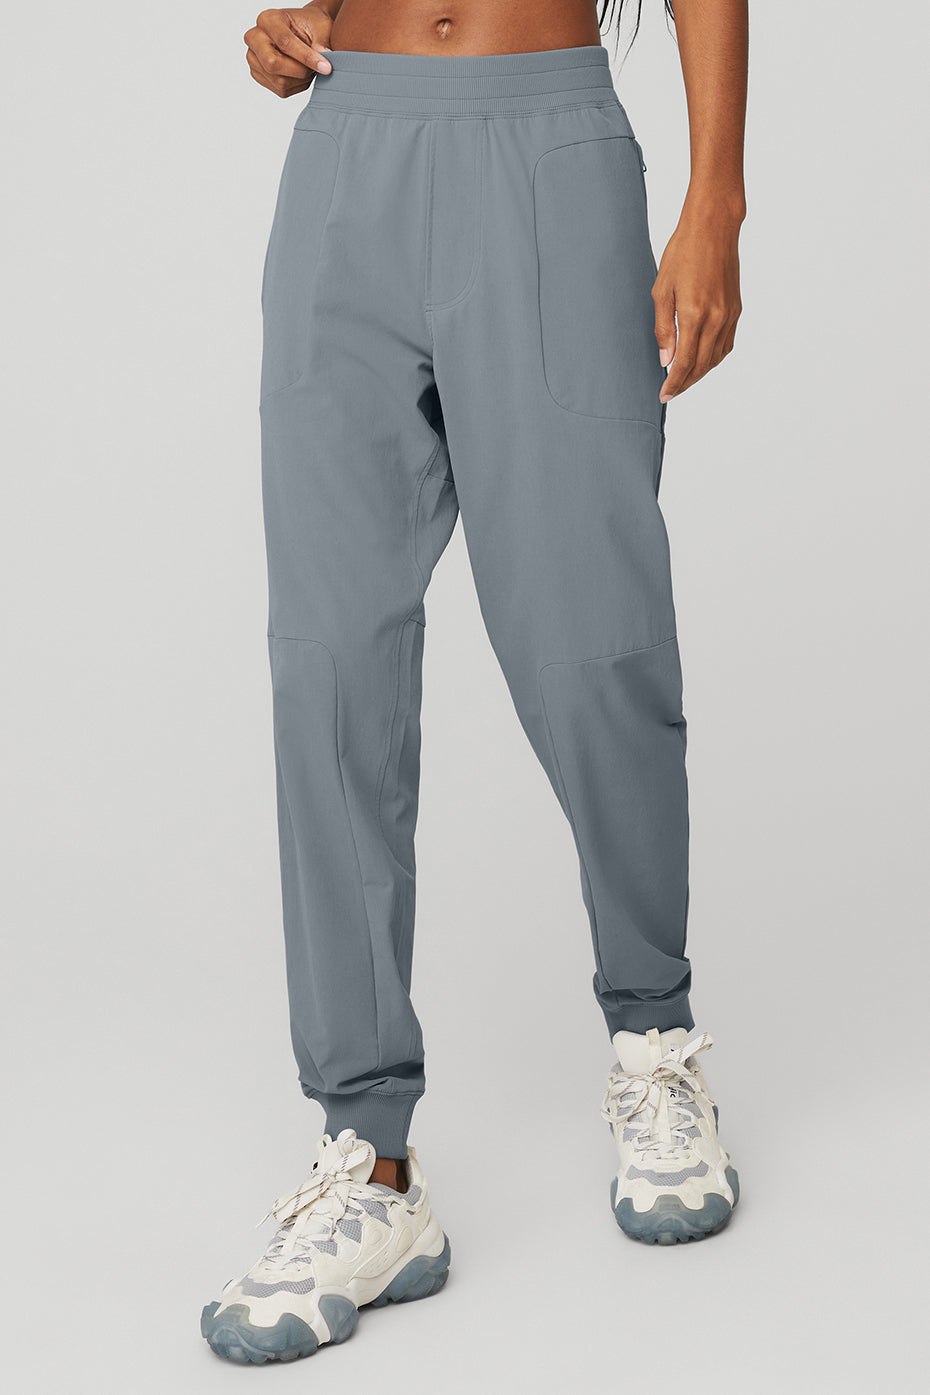 Co-Op Pants in Steel Blue by Alo Yoga